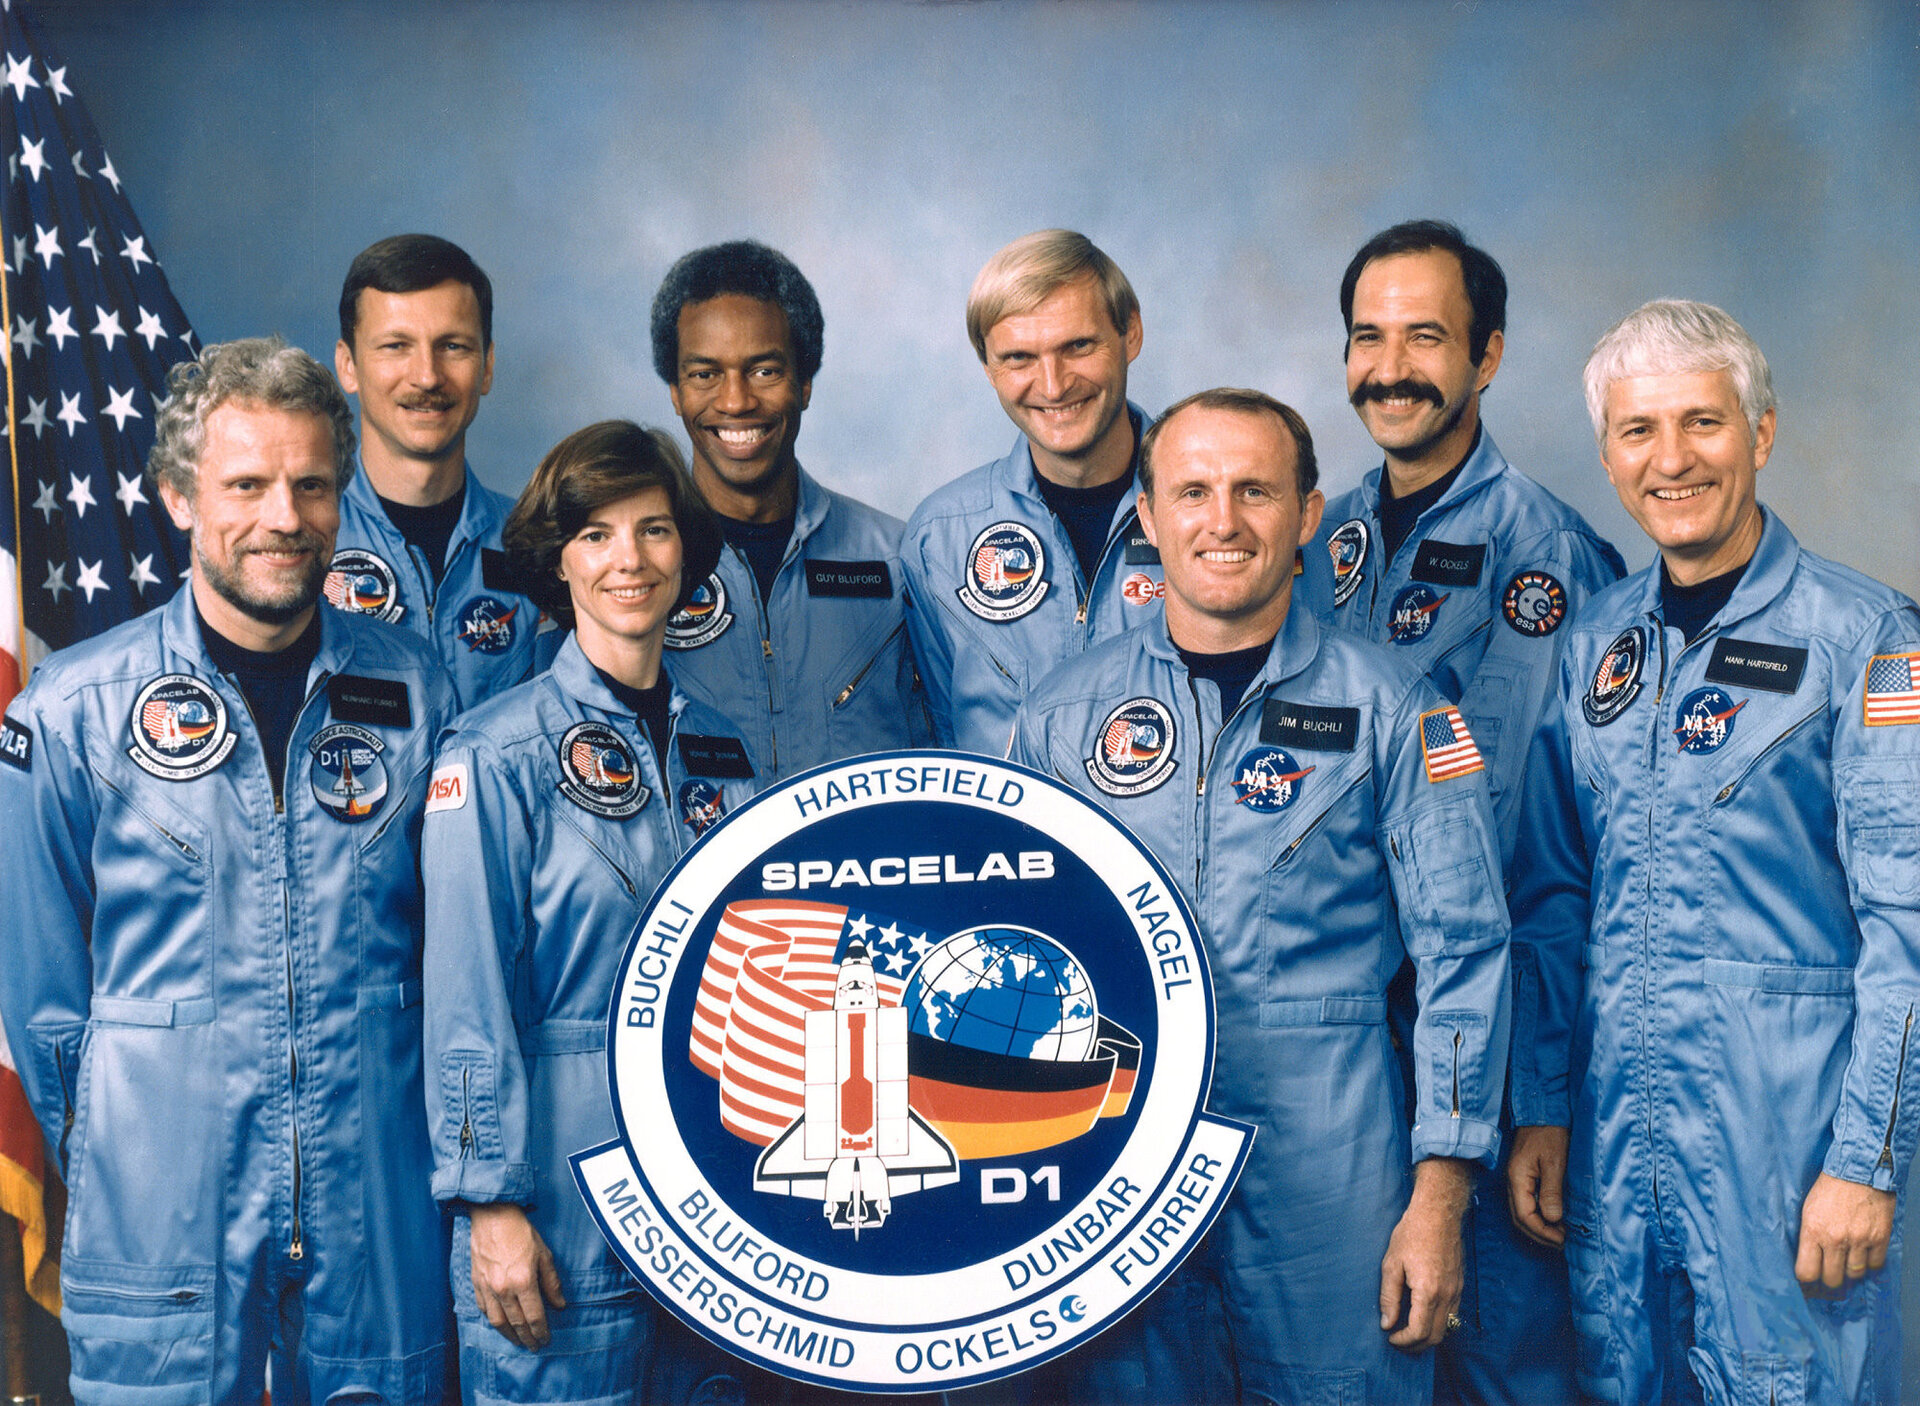 Die Besatzung der Mission STS-61A/Spacelab D1